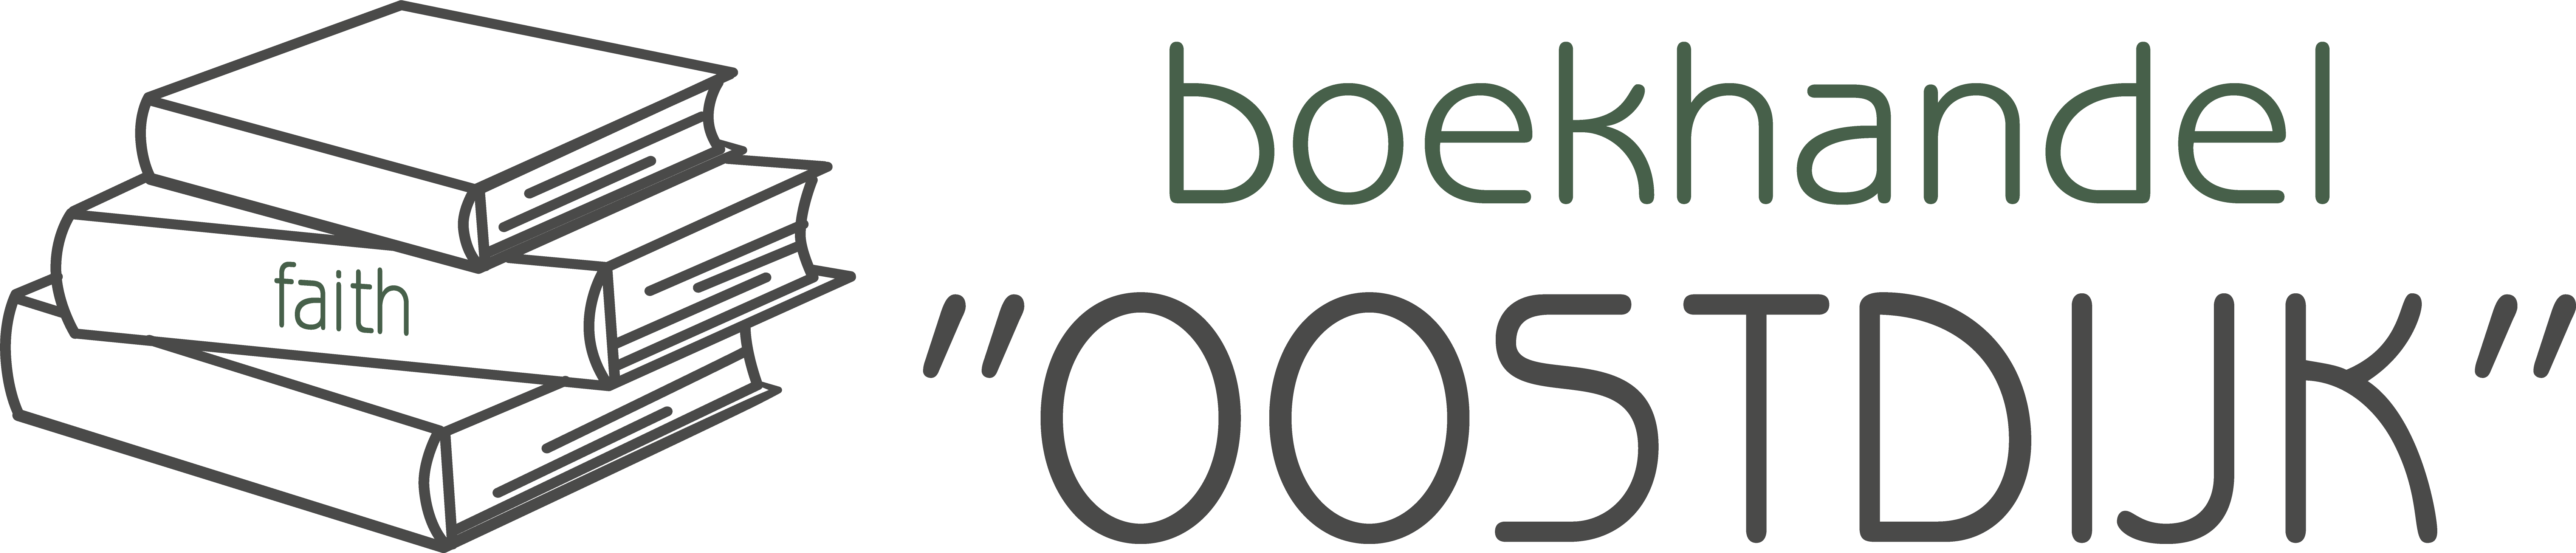 Boekhandel-Oostdijk-logo-2021-02